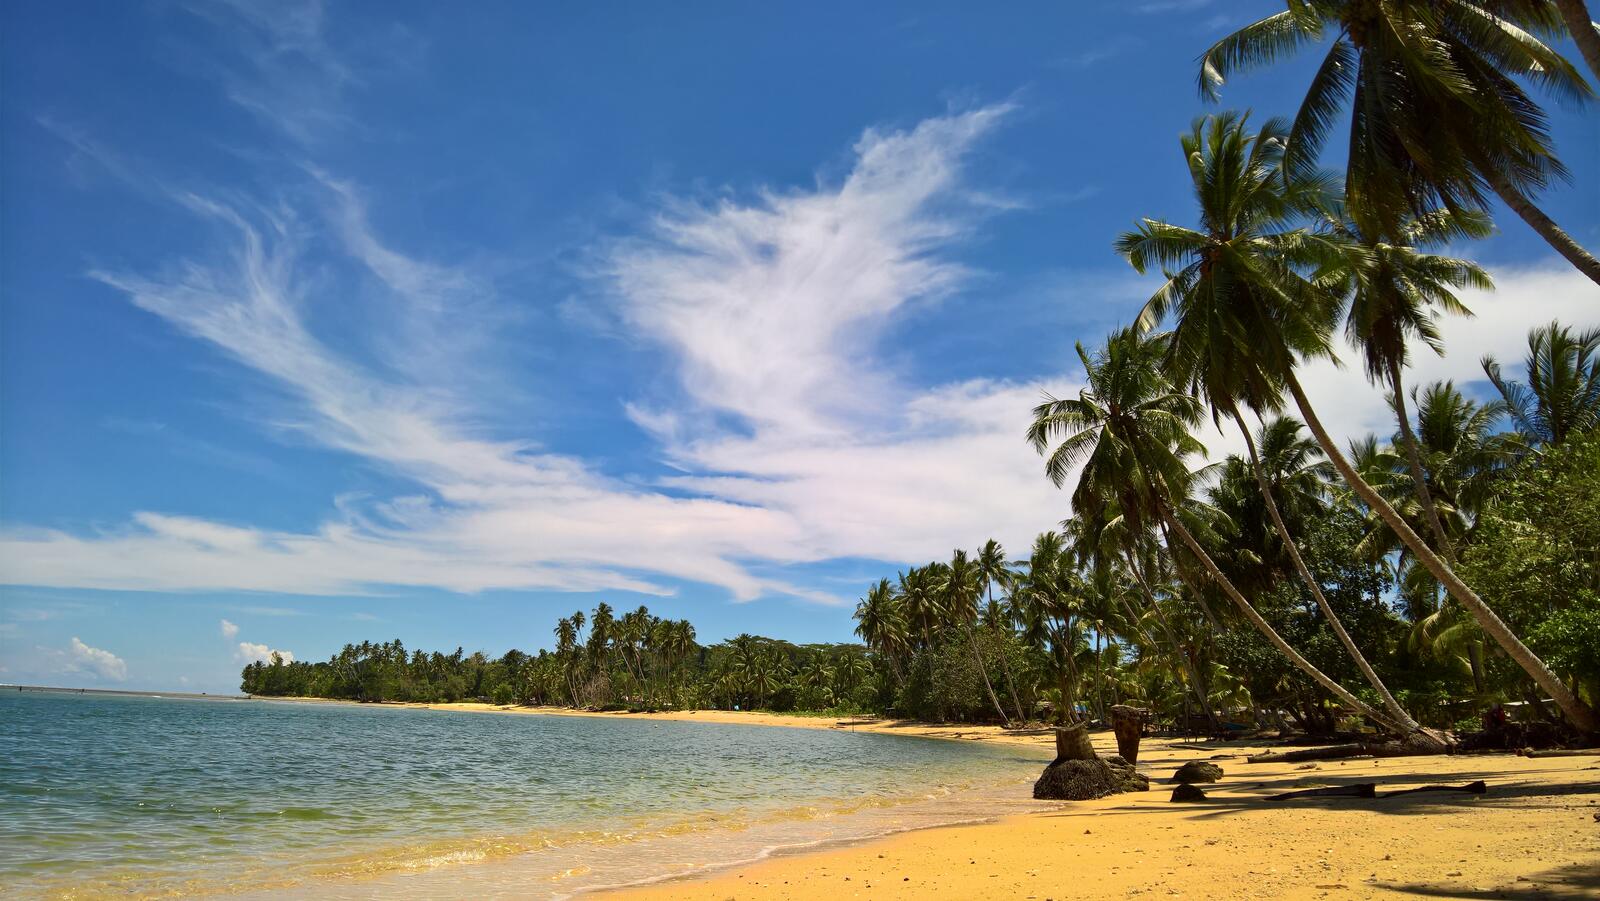 Бесплатное фото Остров с желтым песком и пальмами